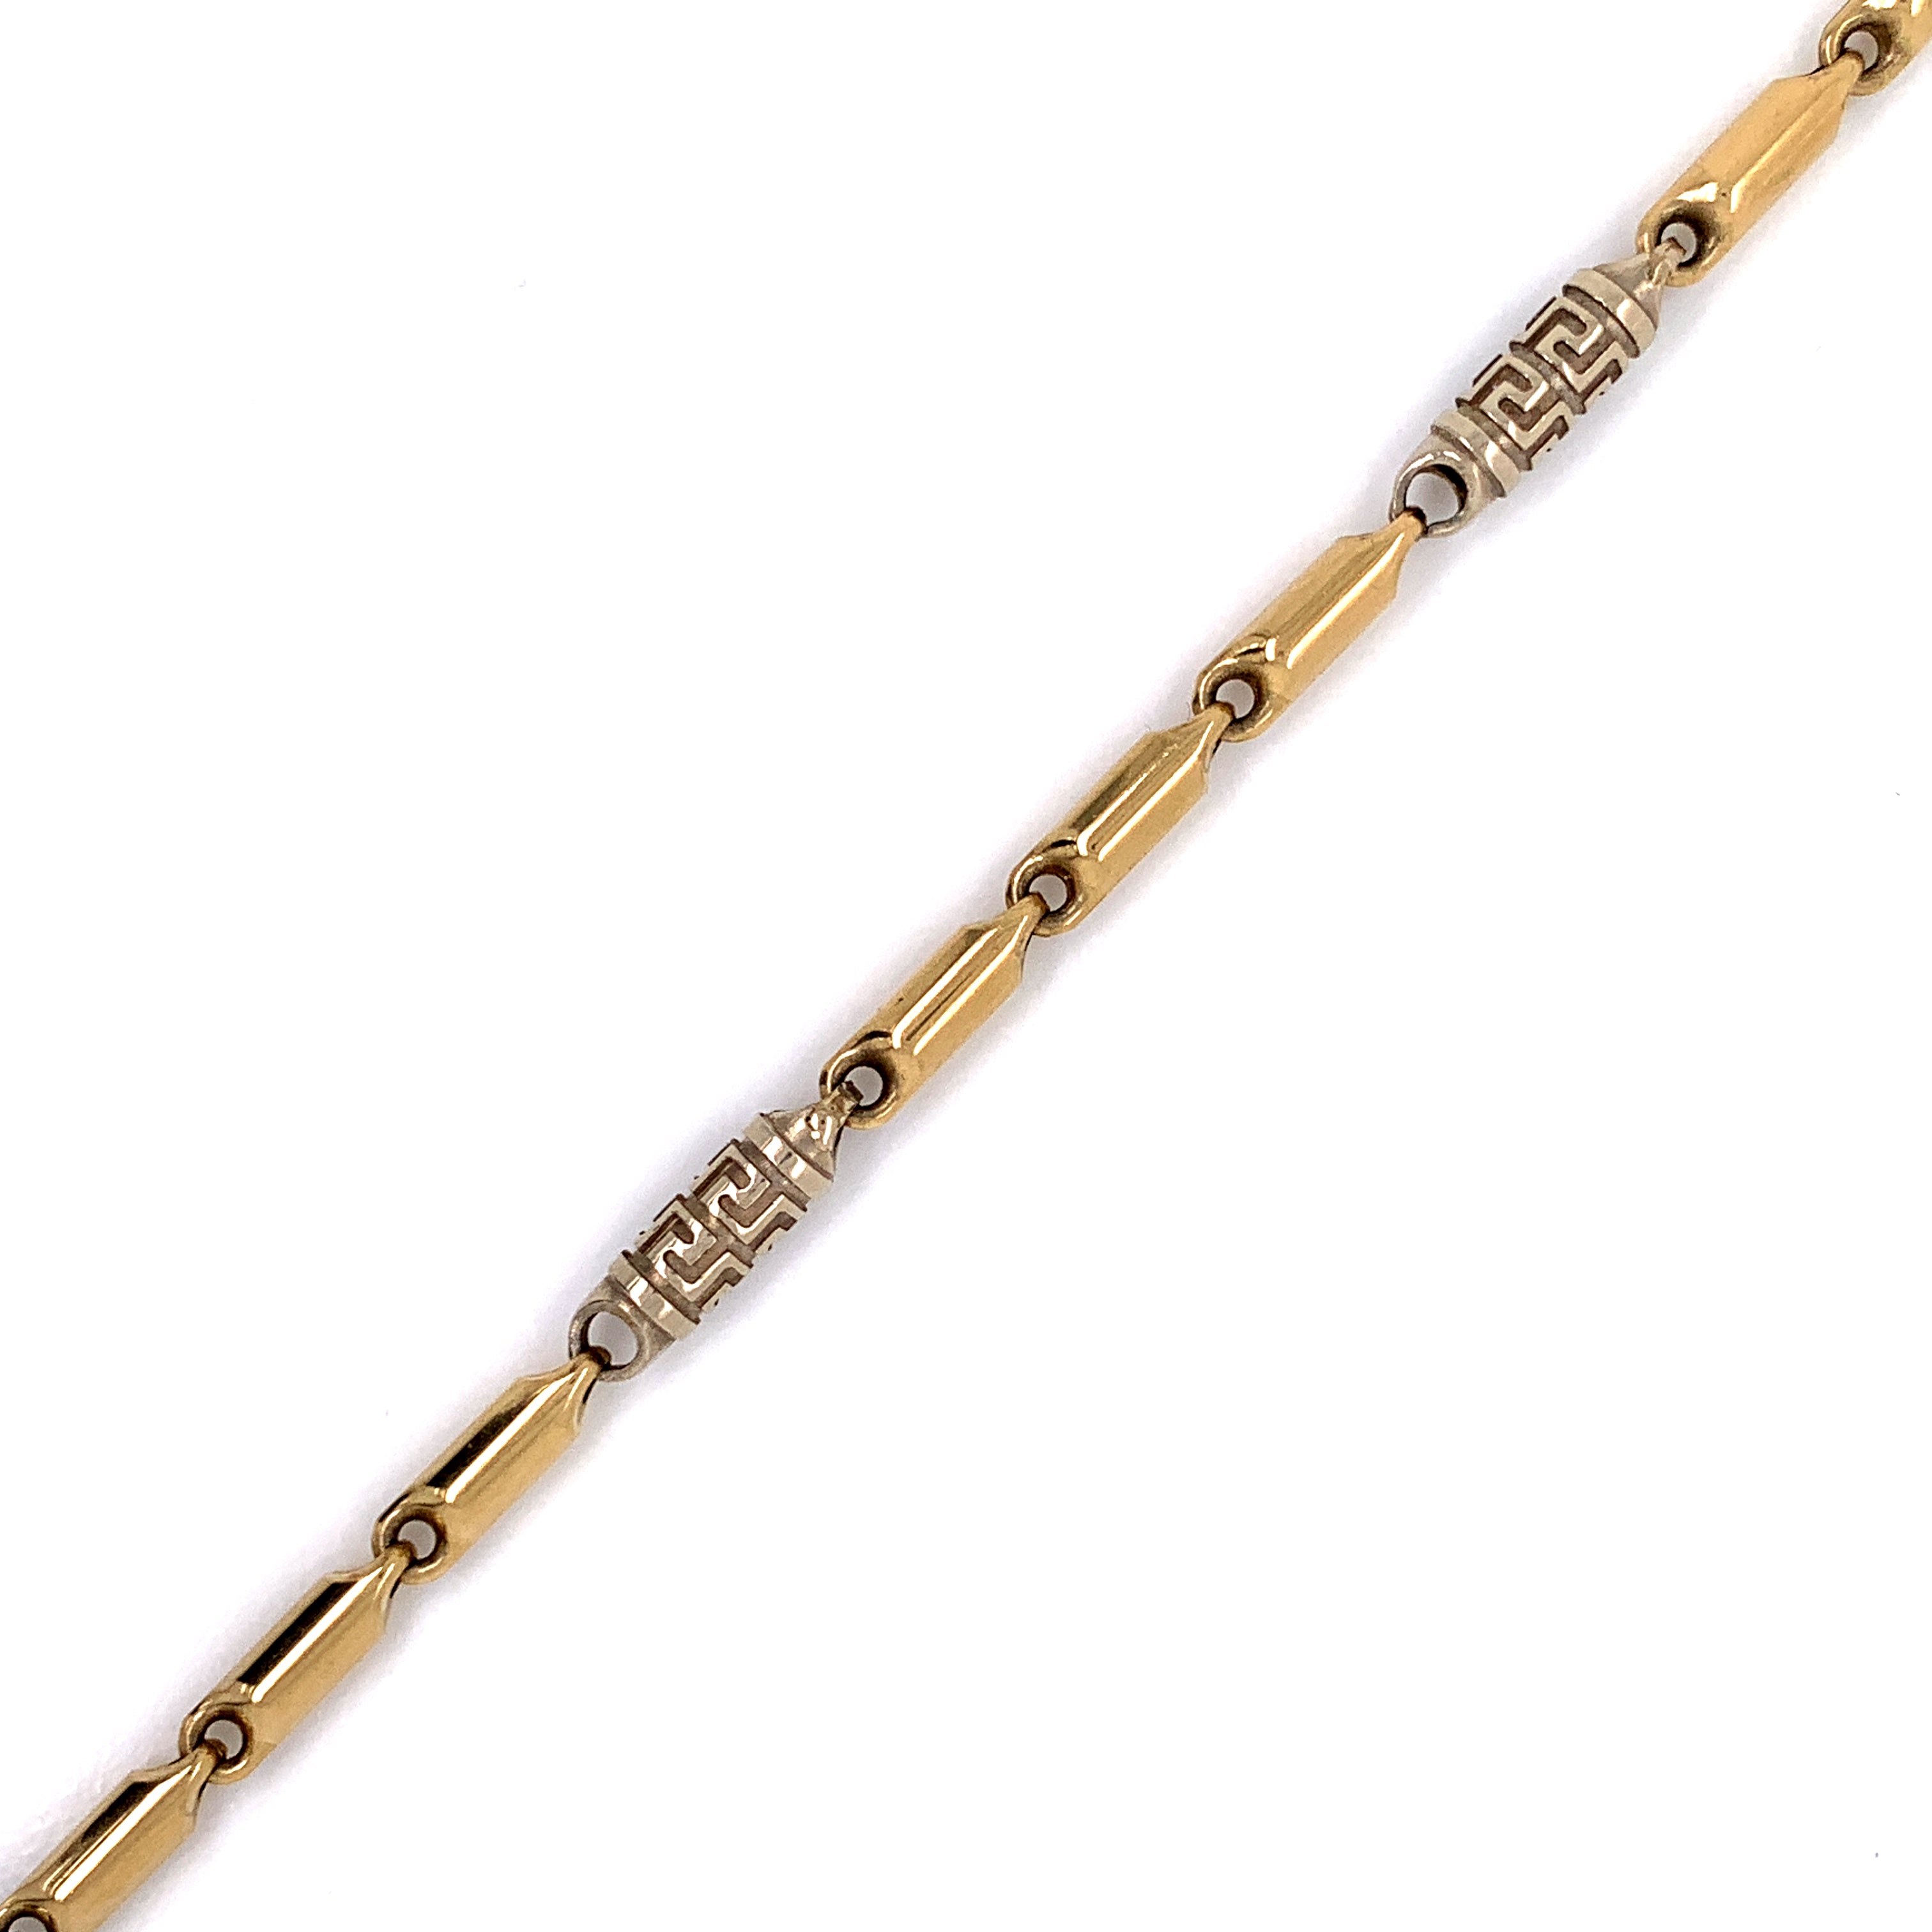 10K Gold Bullet Bracelet (Regular)- 5MM - White Carat Diamonds 